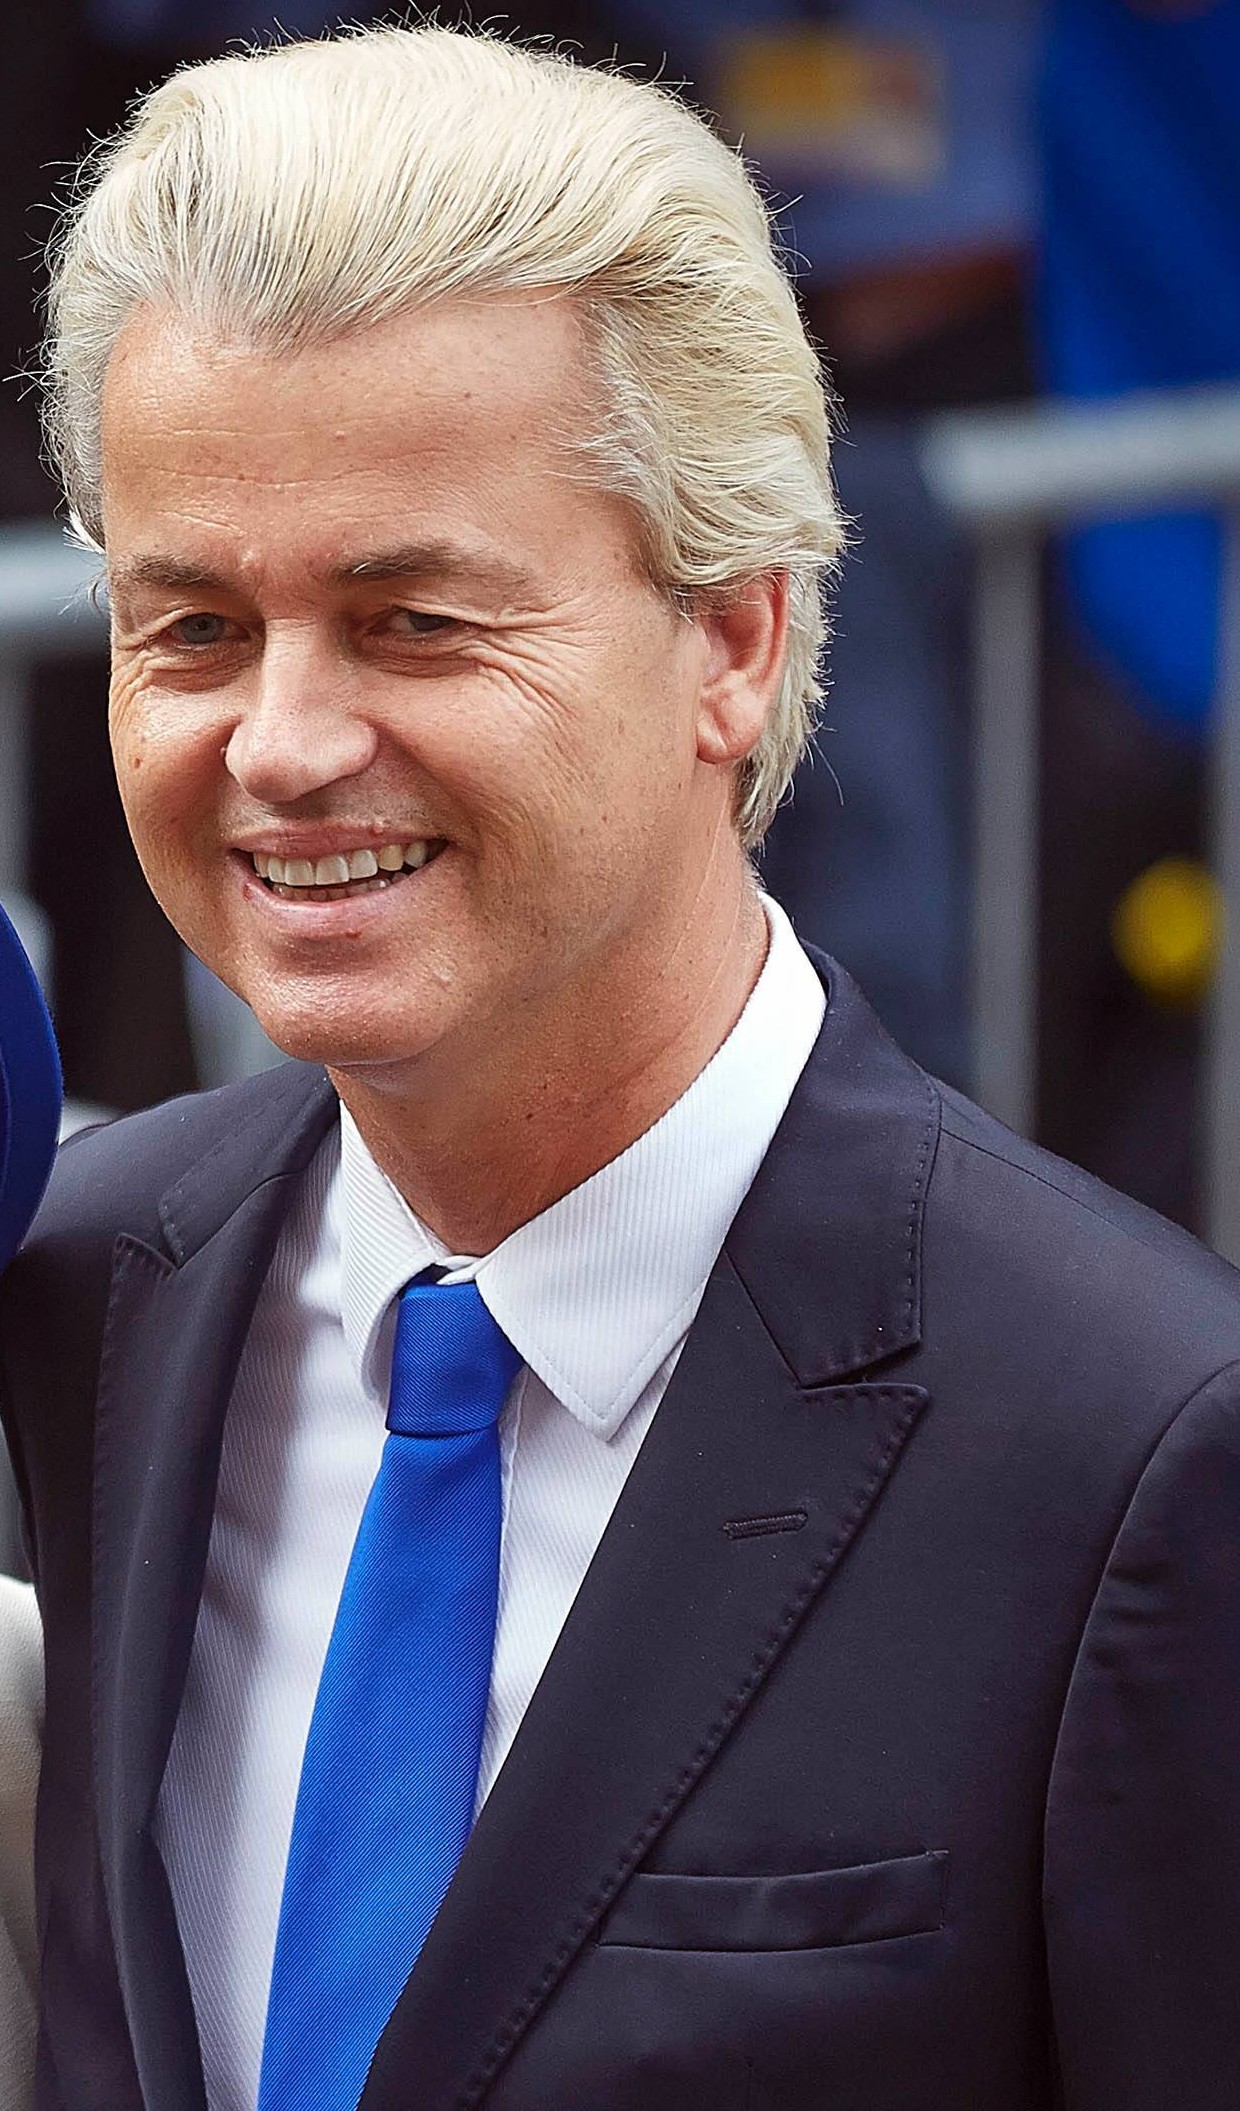 Geert_Wilders_op_Prinsjesdag_2014_%28cropped%29.jpg